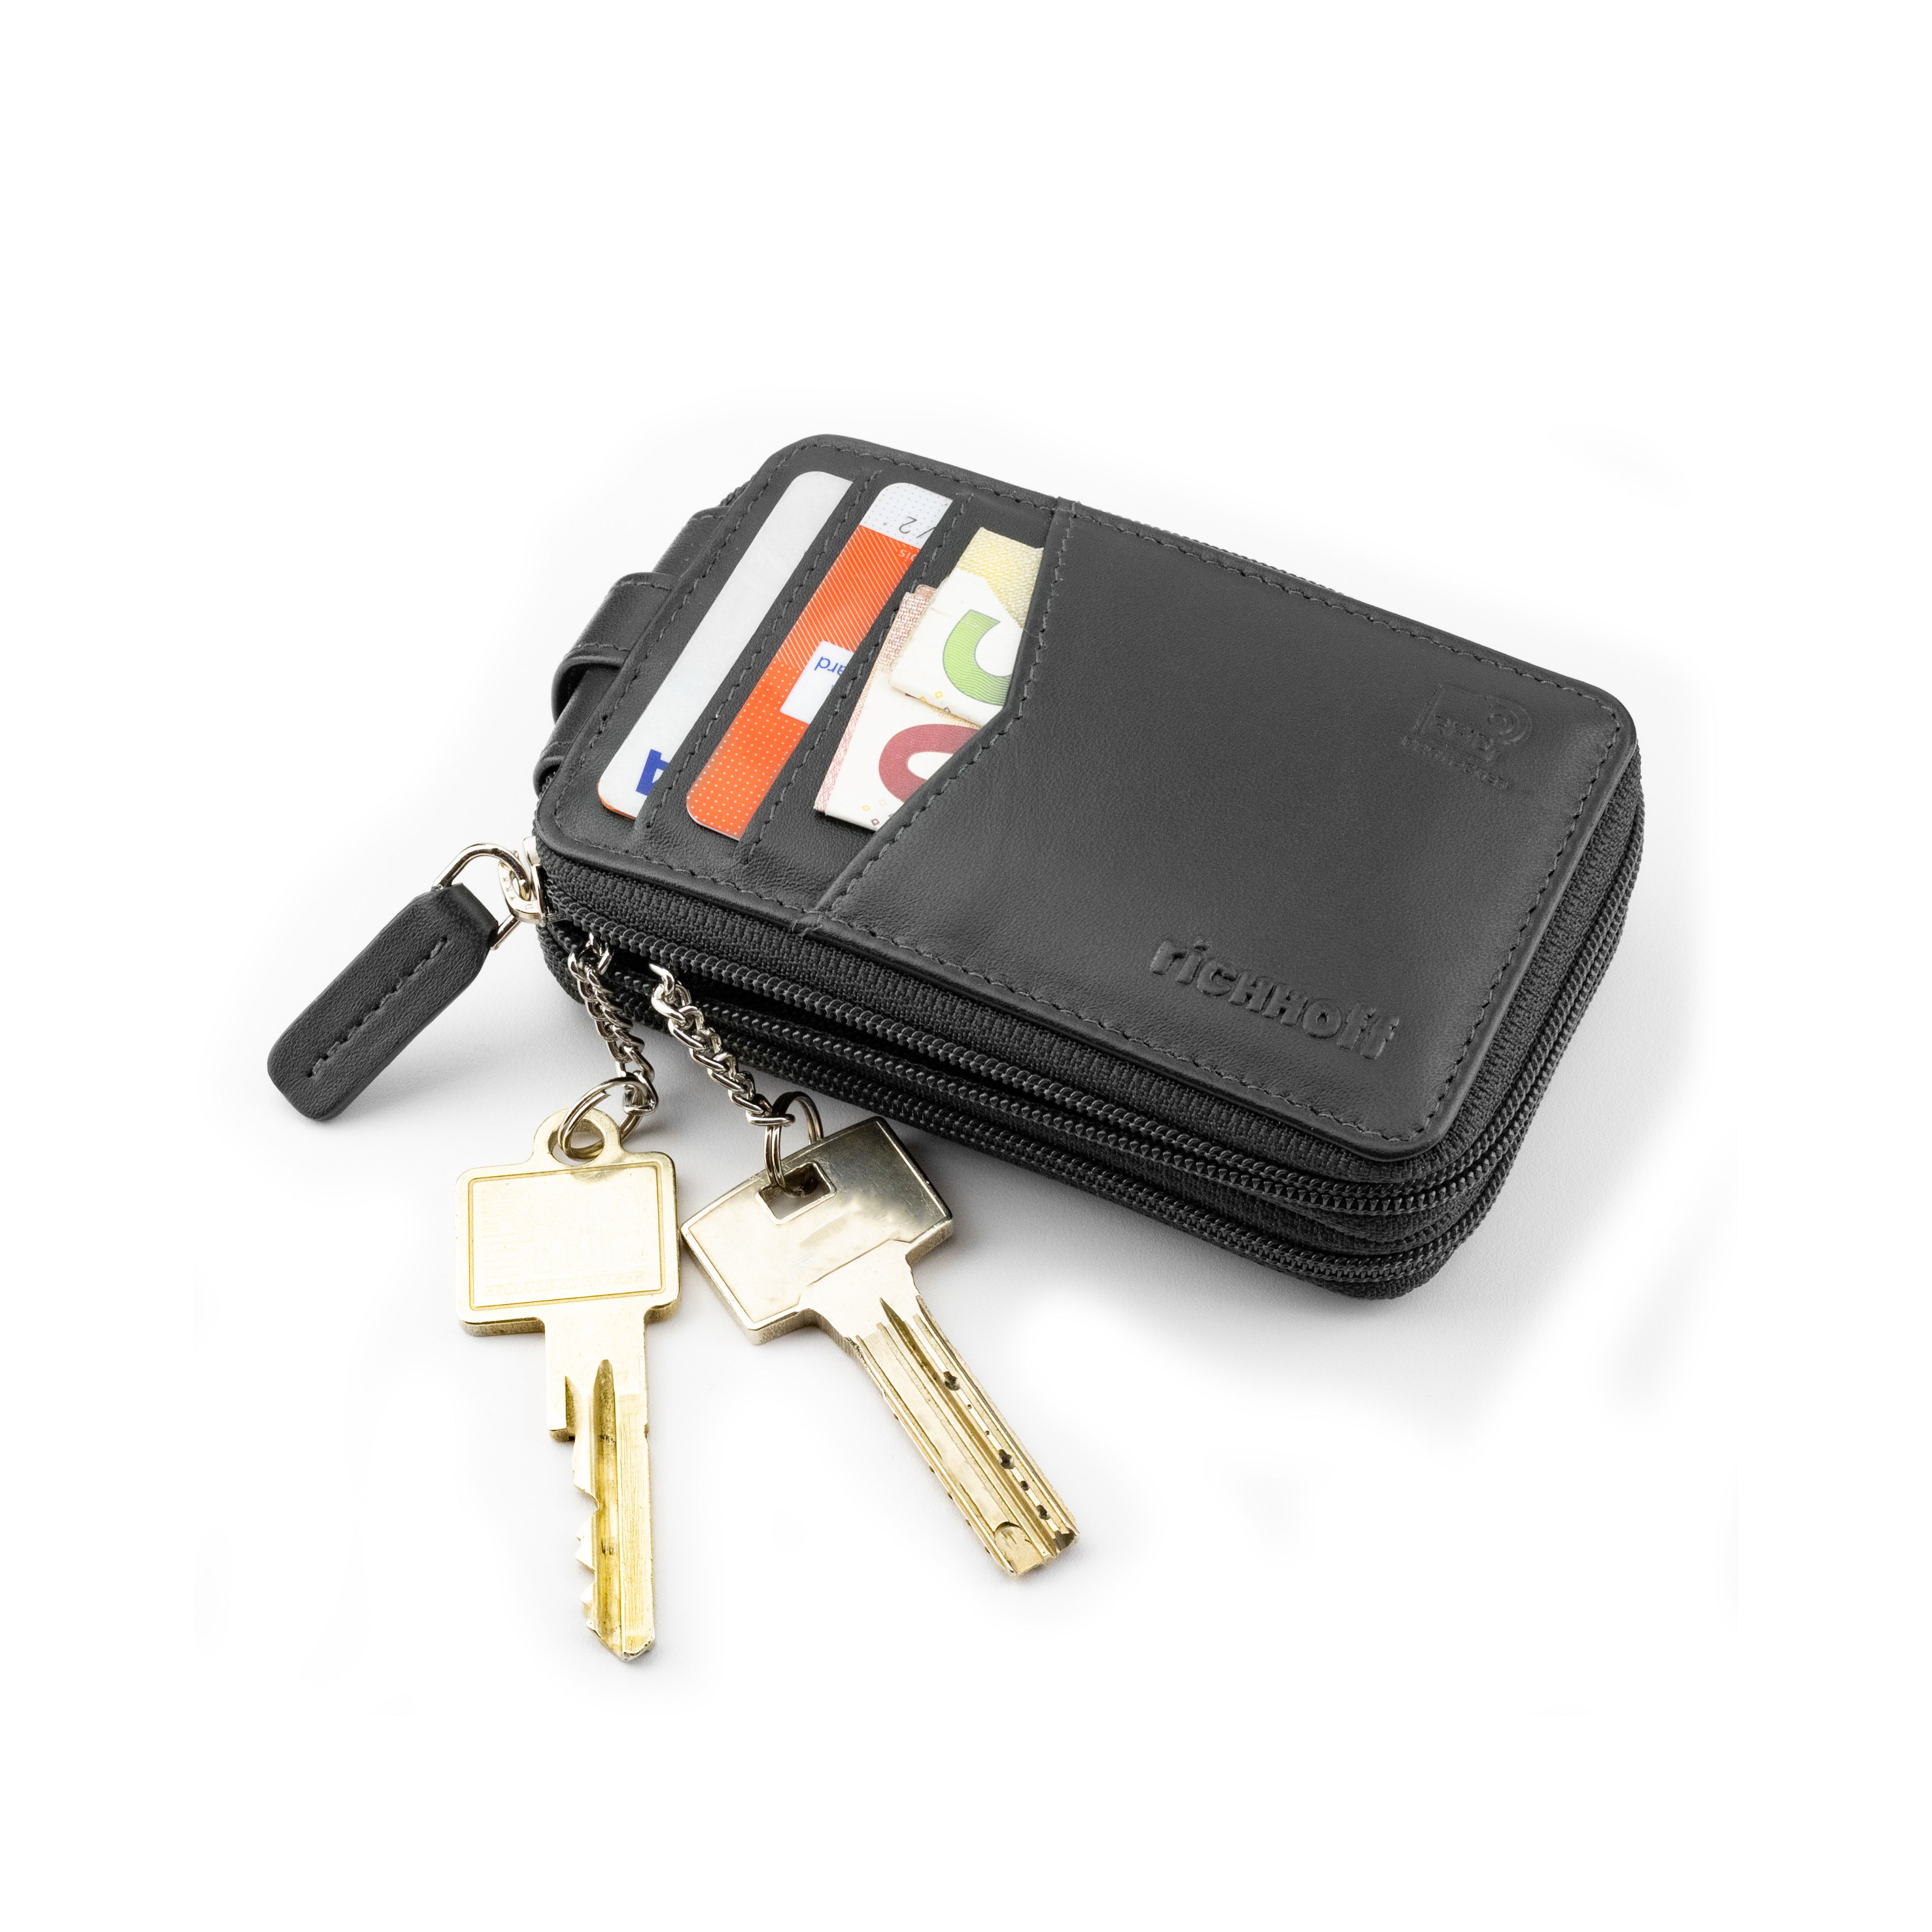 Leder Smart Auto Schlüsseletui personalisierte Schlüssel Halter Smart  keyfob, neue Auto Schlüsselanhänger Luxus Geschenk für Männer Frauen Auto  Schlüssel Abdeckung, Fernschlüssel Fall - .de